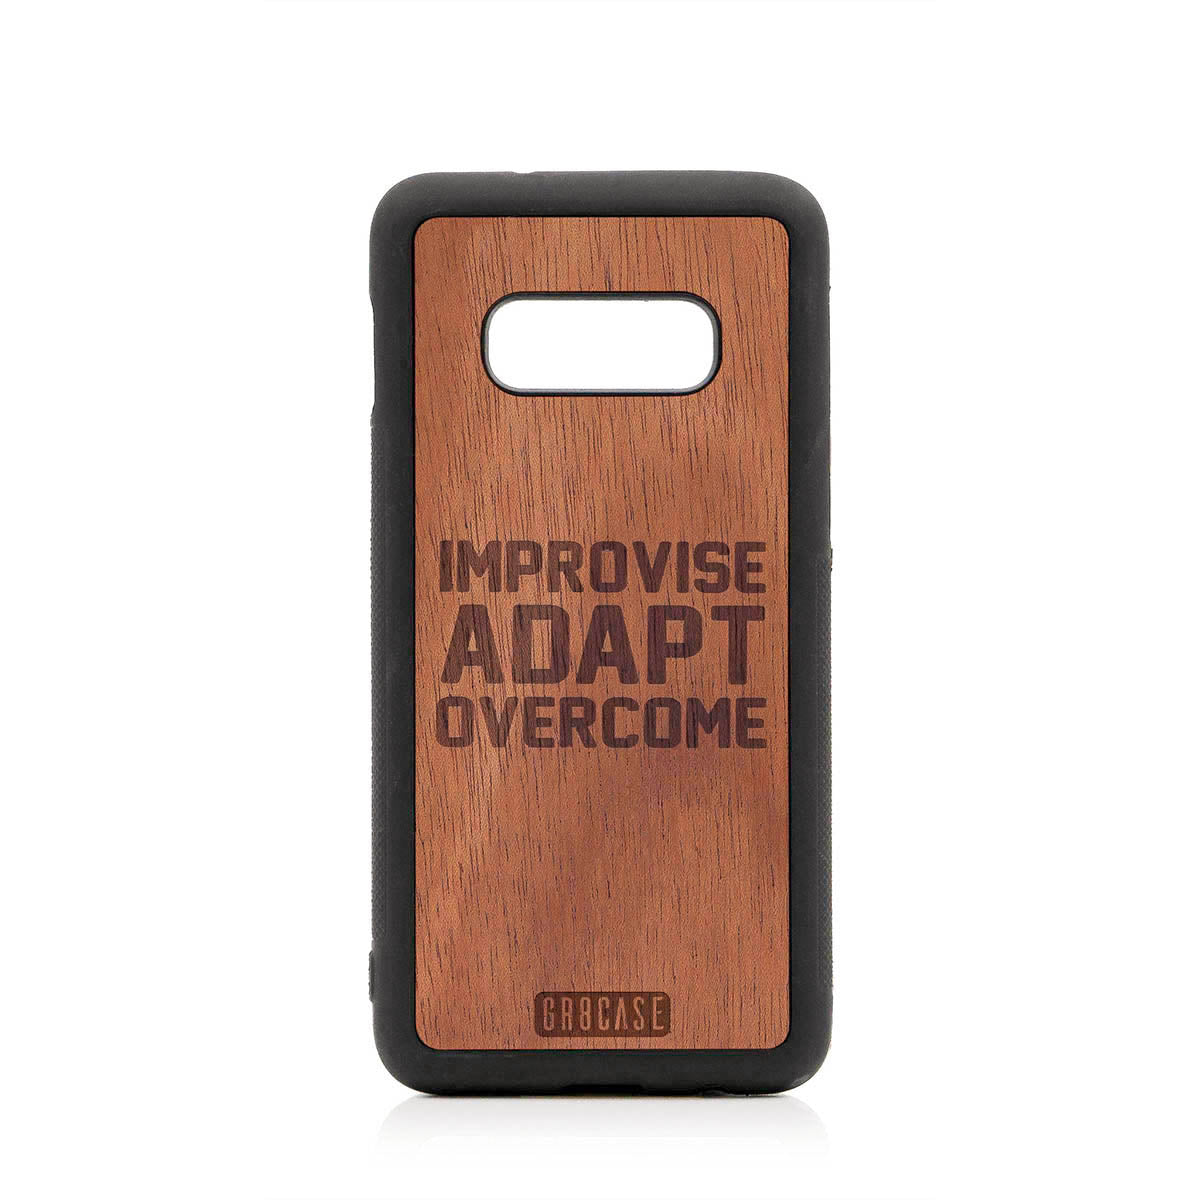 Improvise Adapt Overcome Design Wood Case For Samsung Galaxy S10E